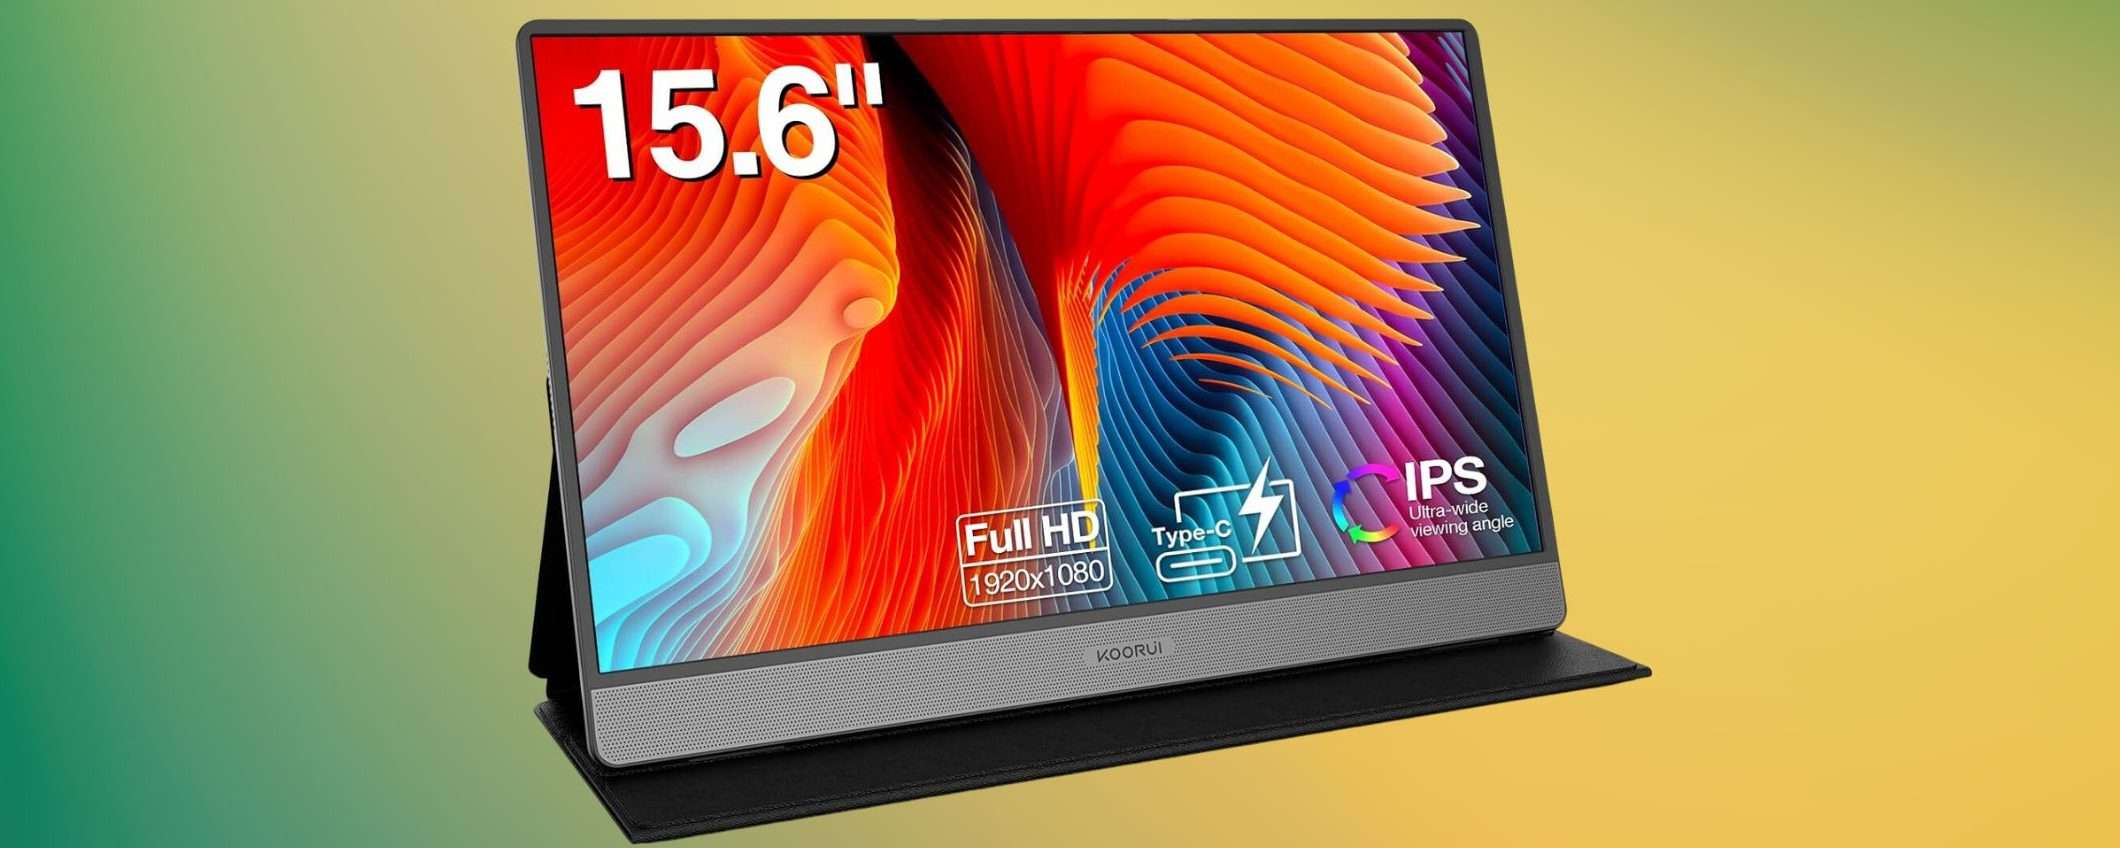 Monitor portatile da 15.6 pollici Full HD in offerta a meno di 90€